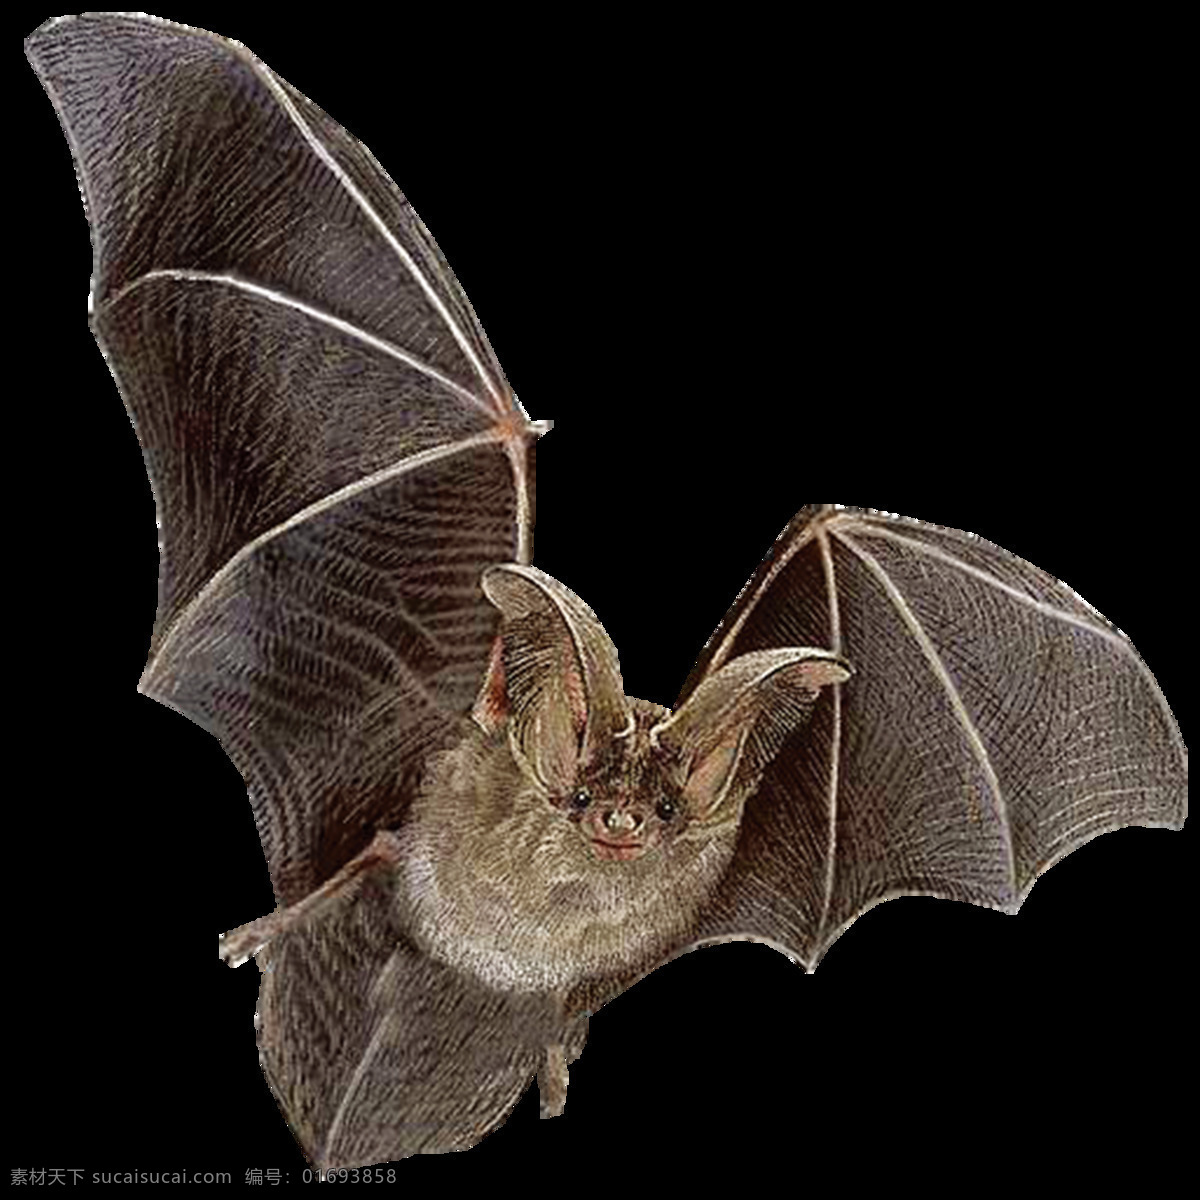 平面 元素 生物 蝙蝠插画 蝙蝠手绘 黑蝙蝠 小动物 野生动物 动物 生物动物昆虫 生物世界